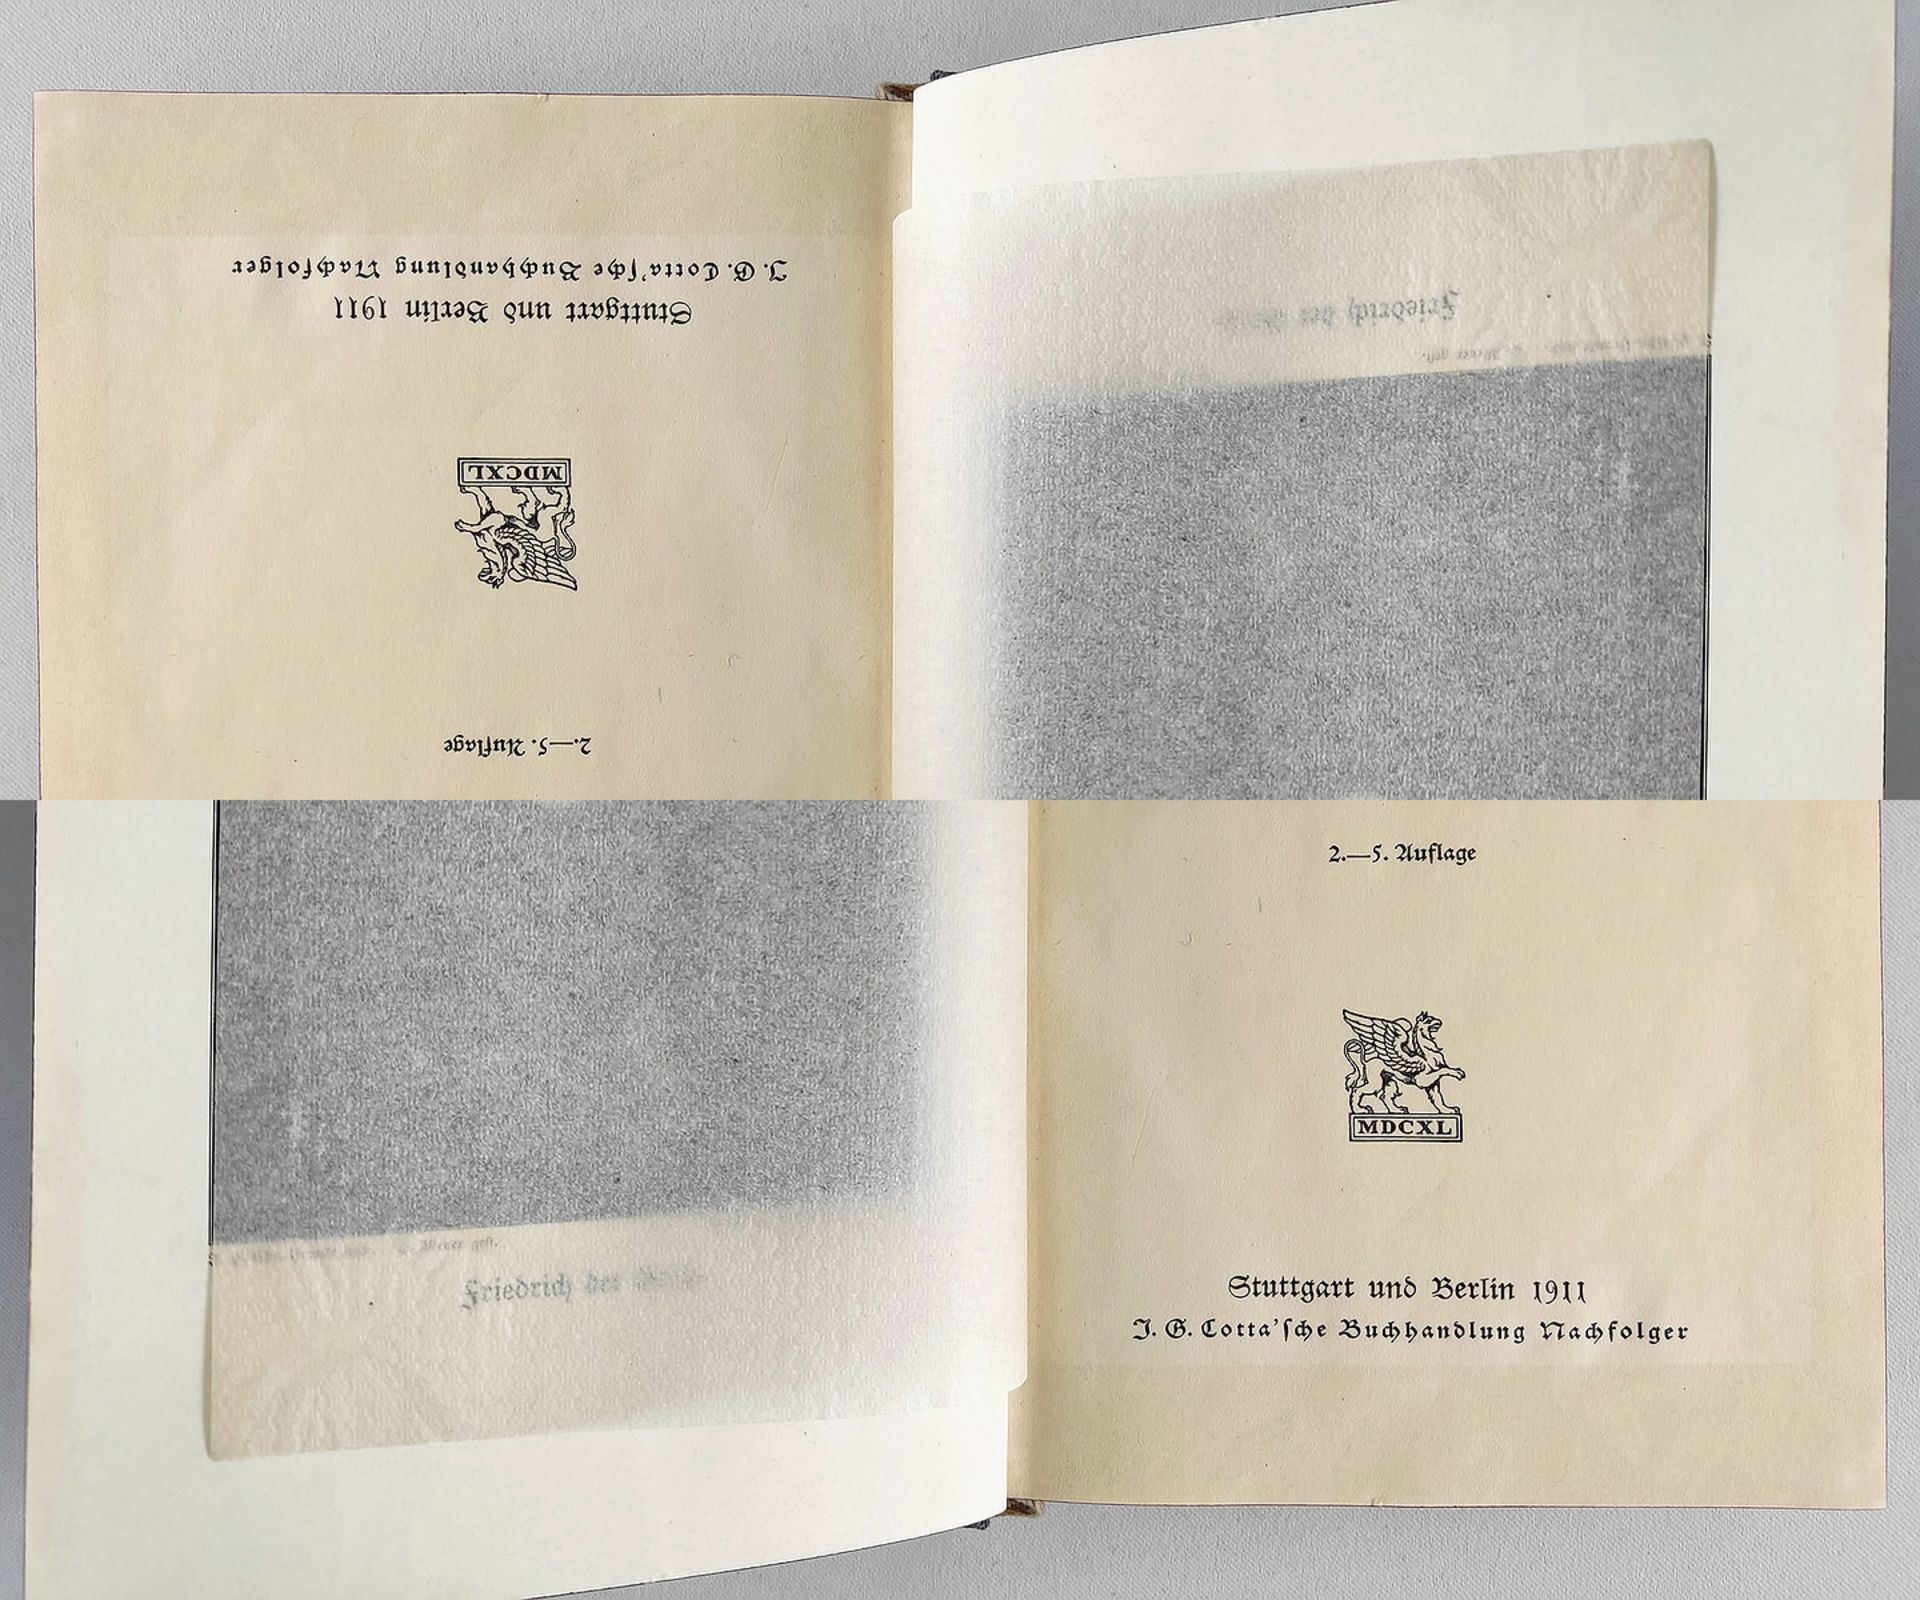 2 Bücher "Friedrich der Große" Carlyle 1923 und Koser 1911 - Image 3 of 3